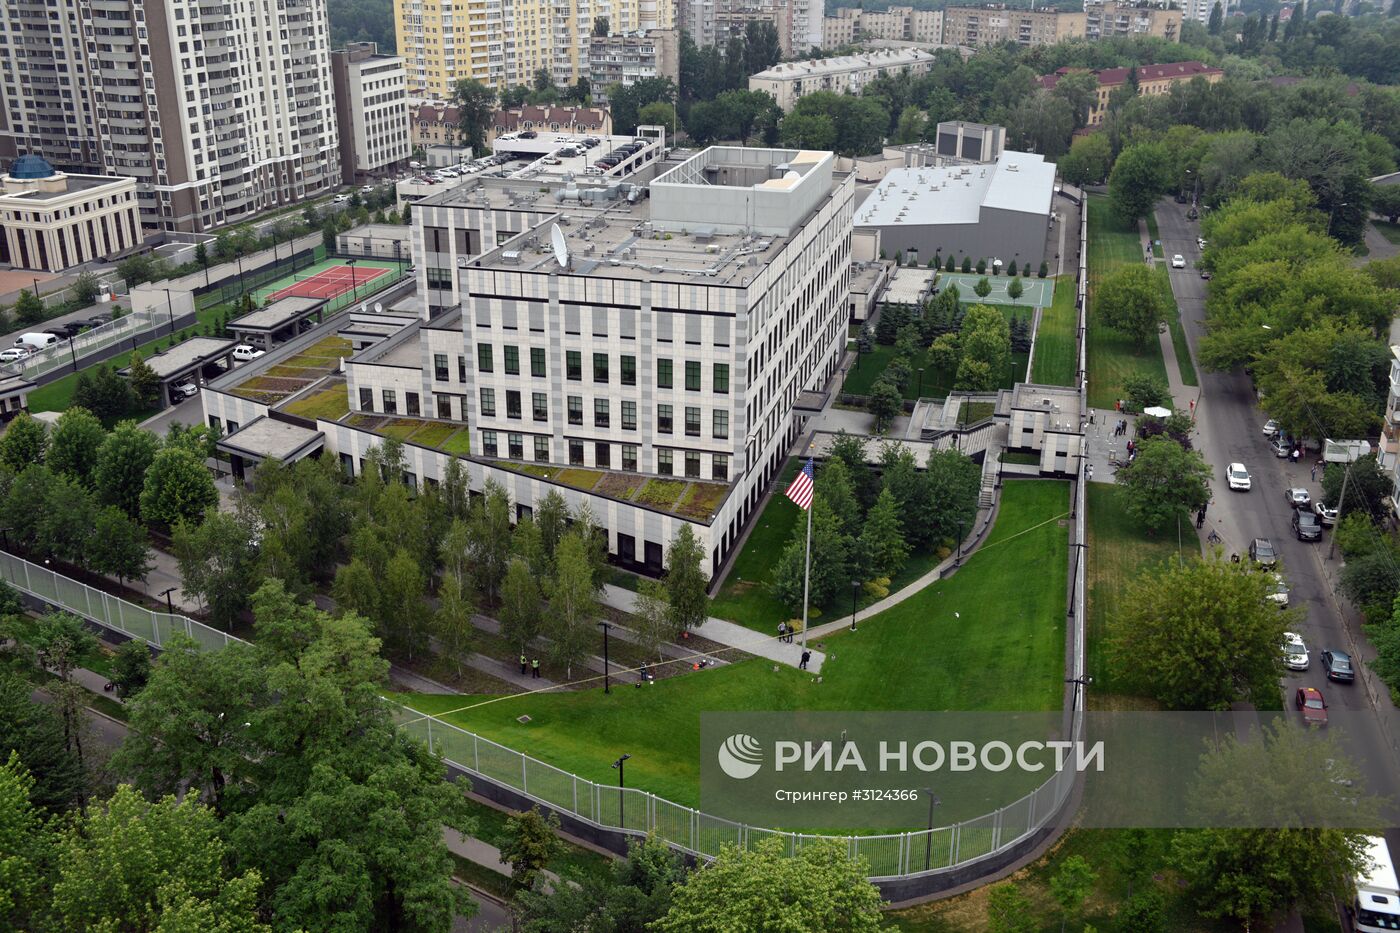 Ситуация на территории посольства США в Киеве